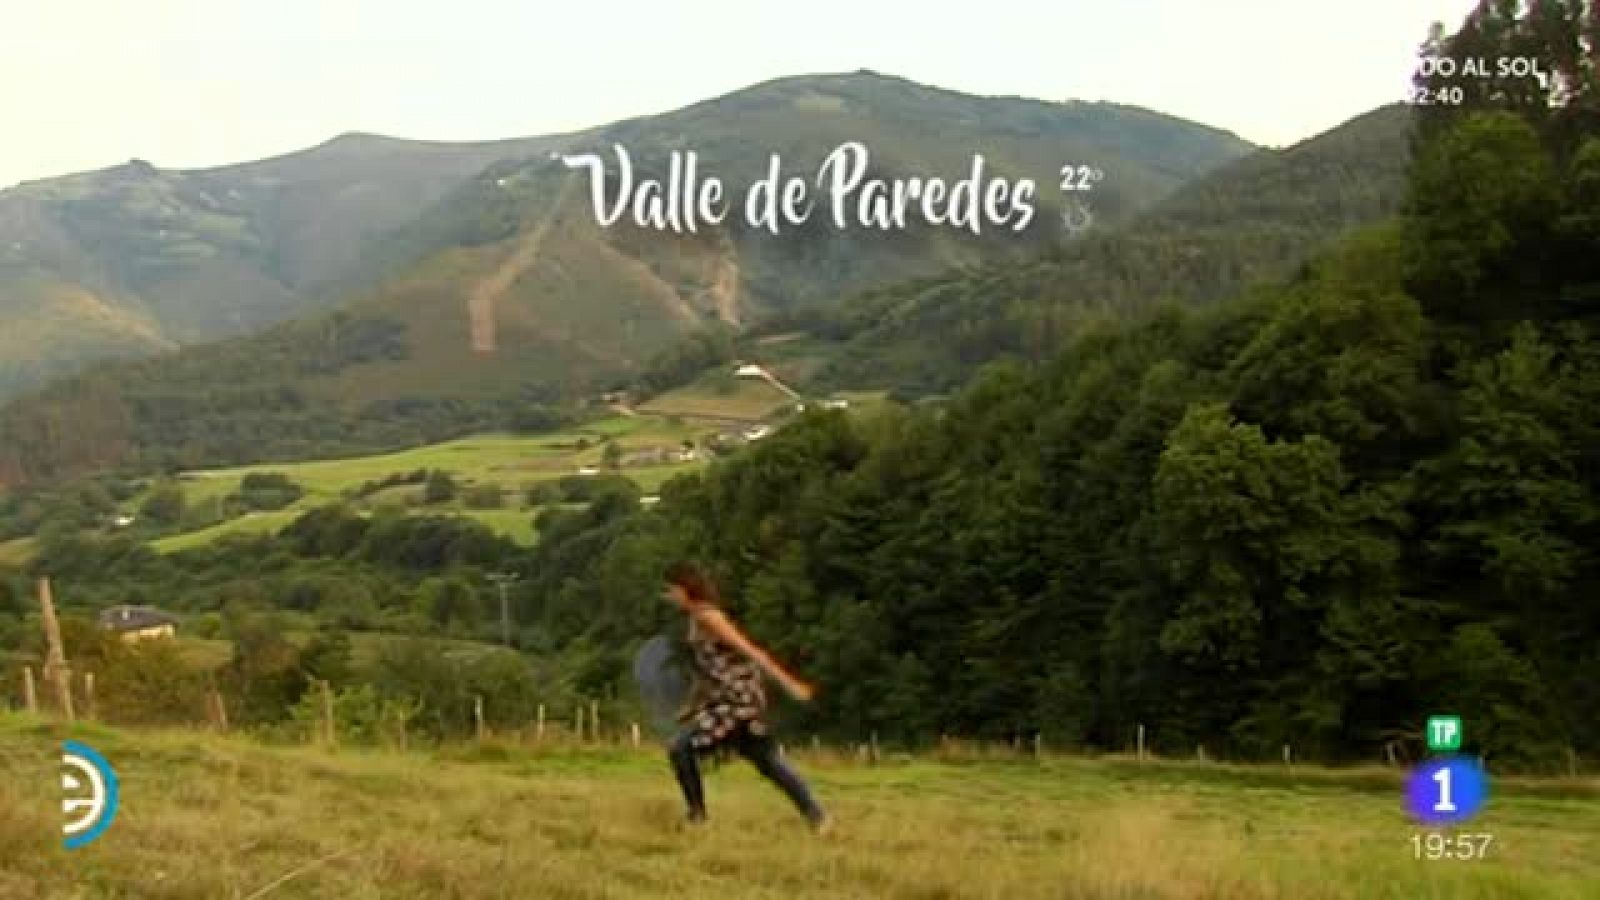 España Directo - Valle de Paredes, tradición vaqueira